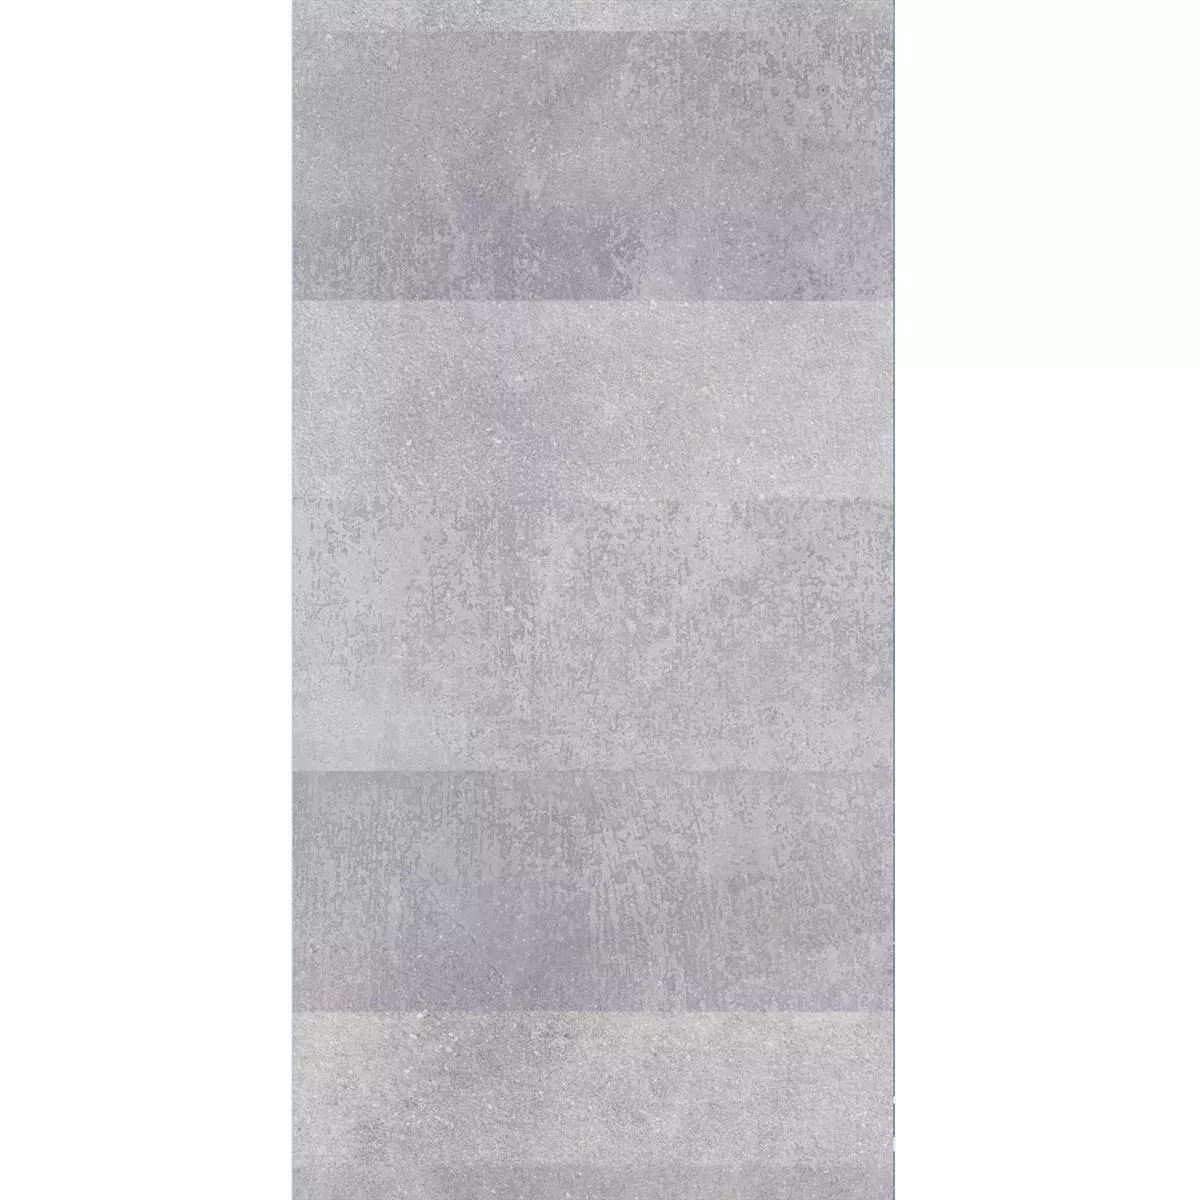 Próbka Płytki Podłogowe Torino Cement Optyka Lappato Szary 60x120cm